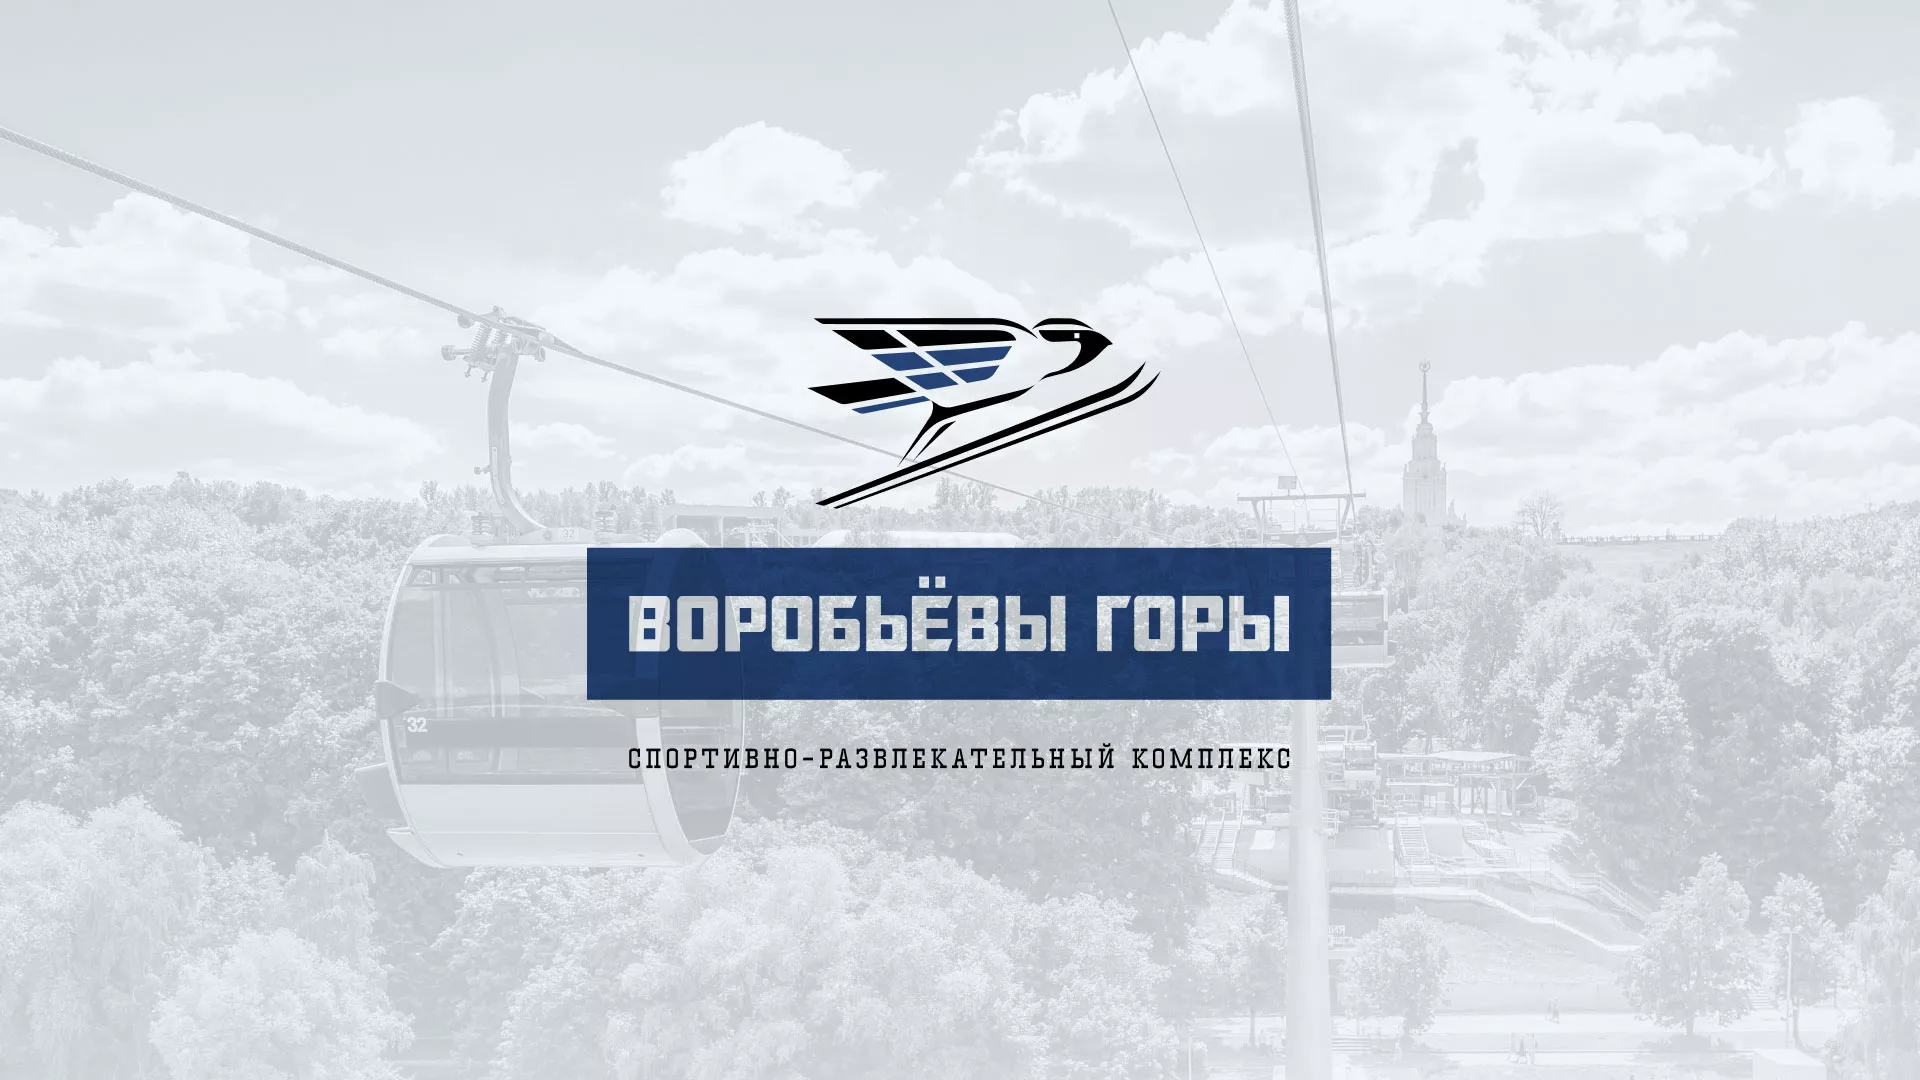 Разработка сайта в Первоуральске для спортивно-развлекательного комплекса «Воробьёвы горы»